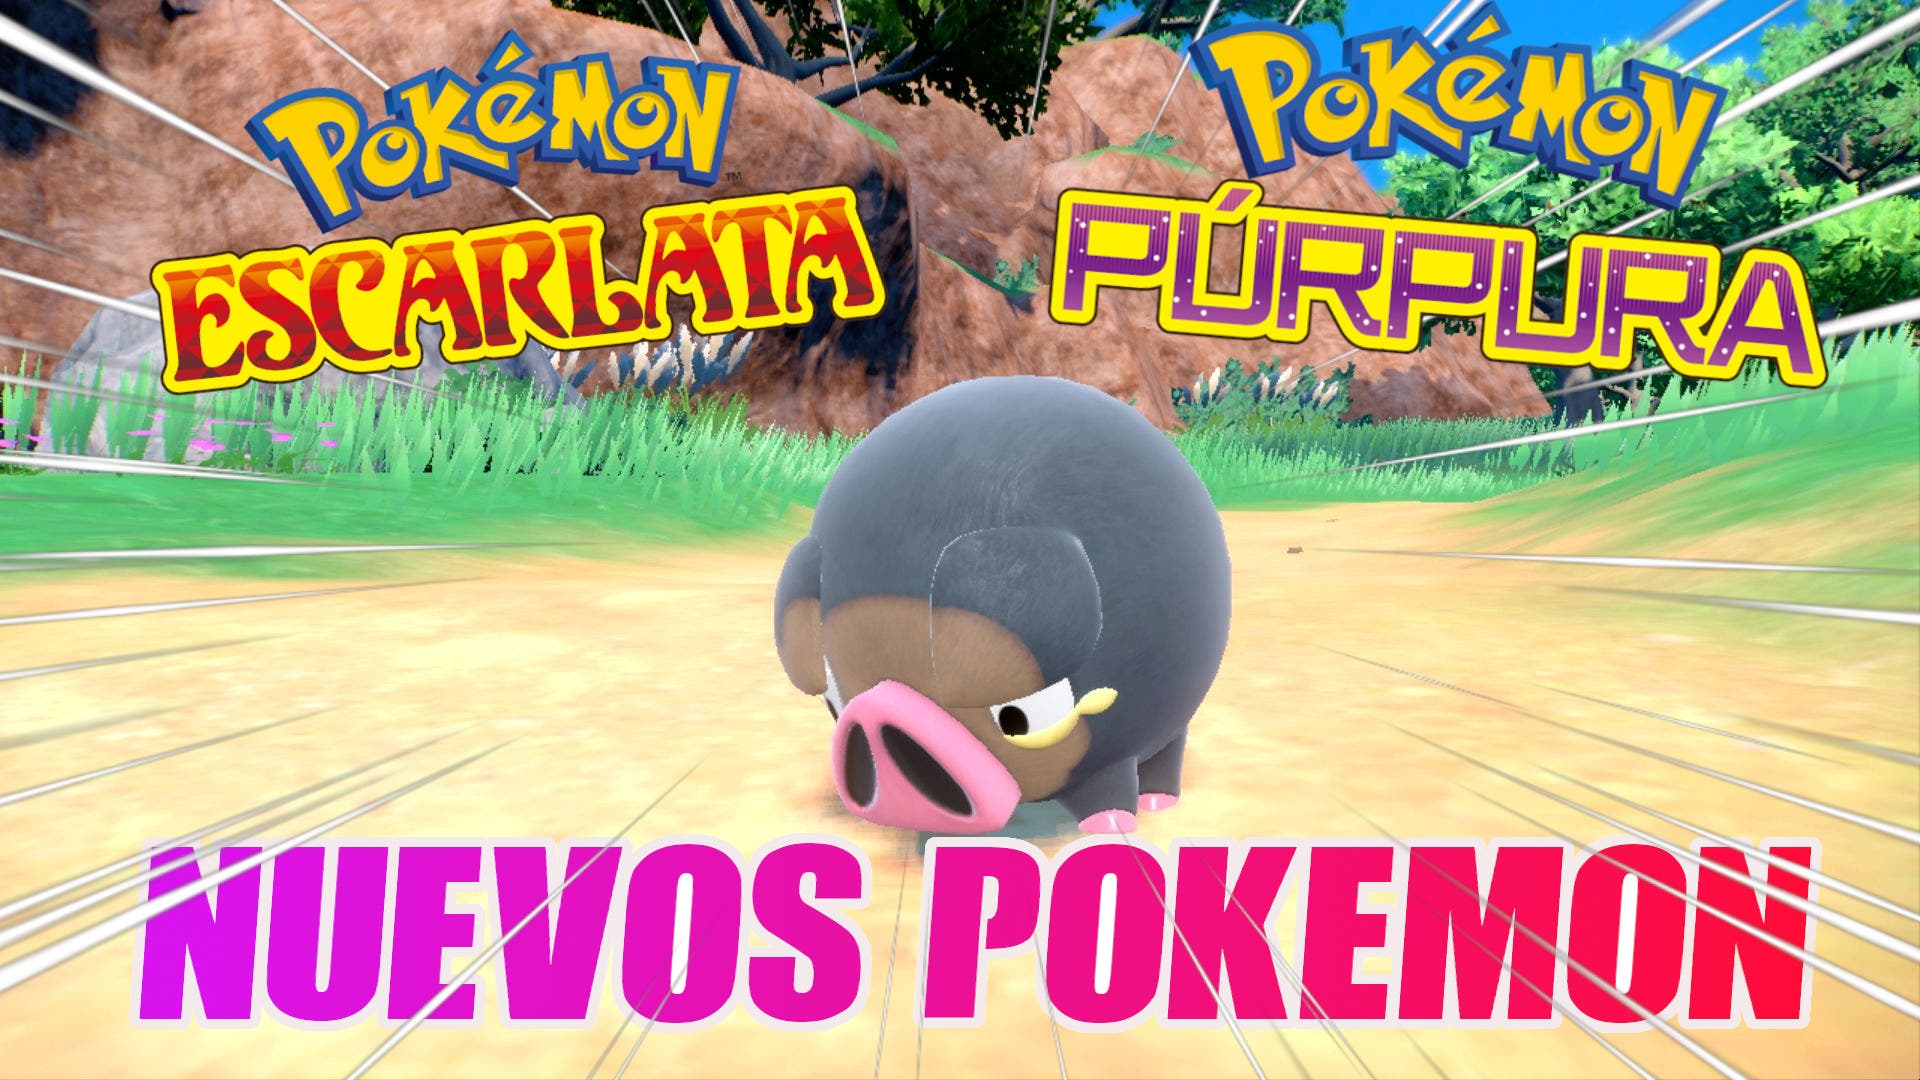 Lechonk es el Pokémon de Escarlata y Púrpura que más corazones ha robado